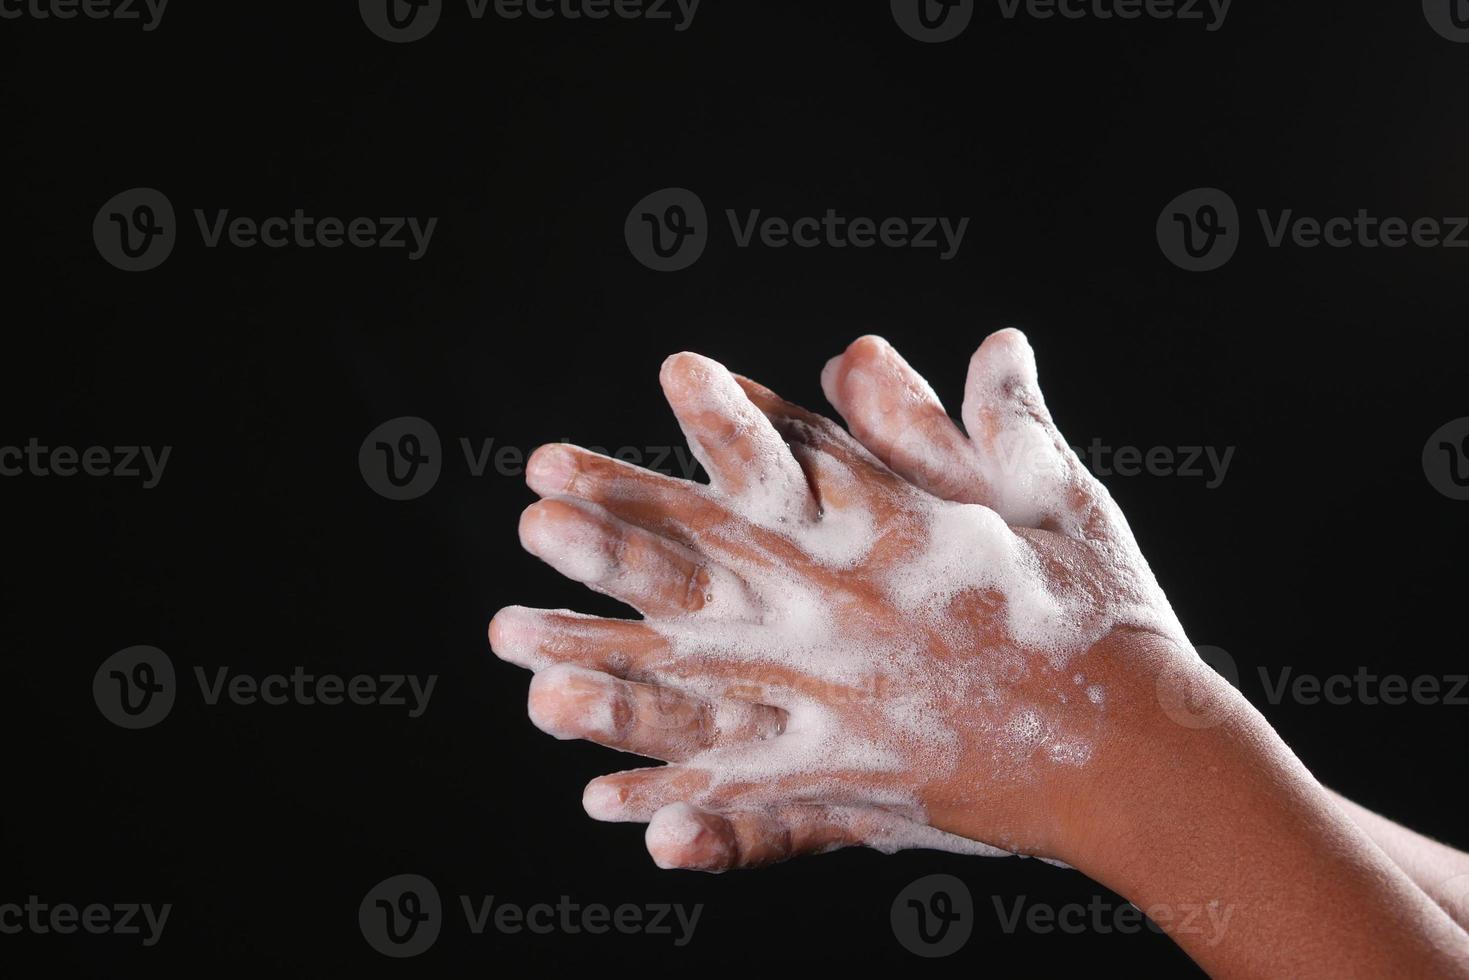 joven lavándose las manos con agua tibia y jabón foto